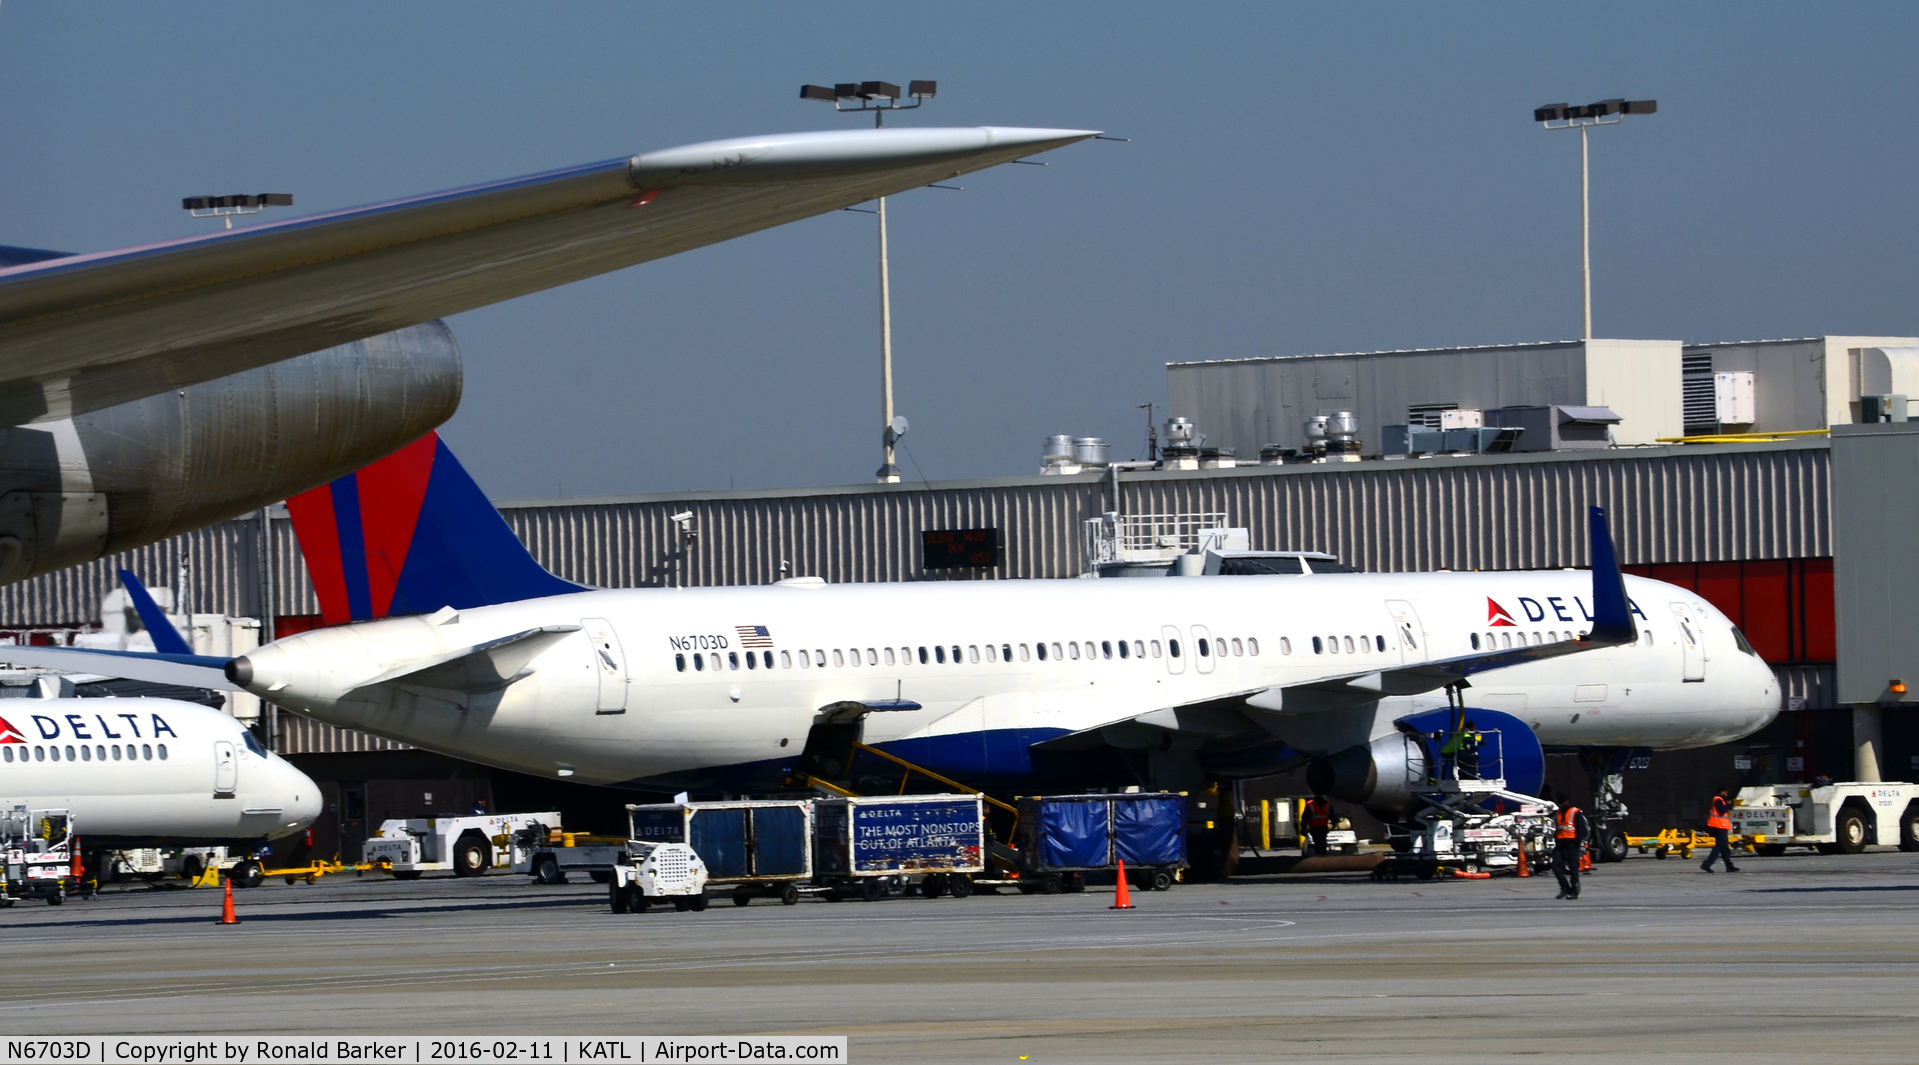 N6703D, 2000 Boeing 757-232 C/N 30234, At the gate Atlanta